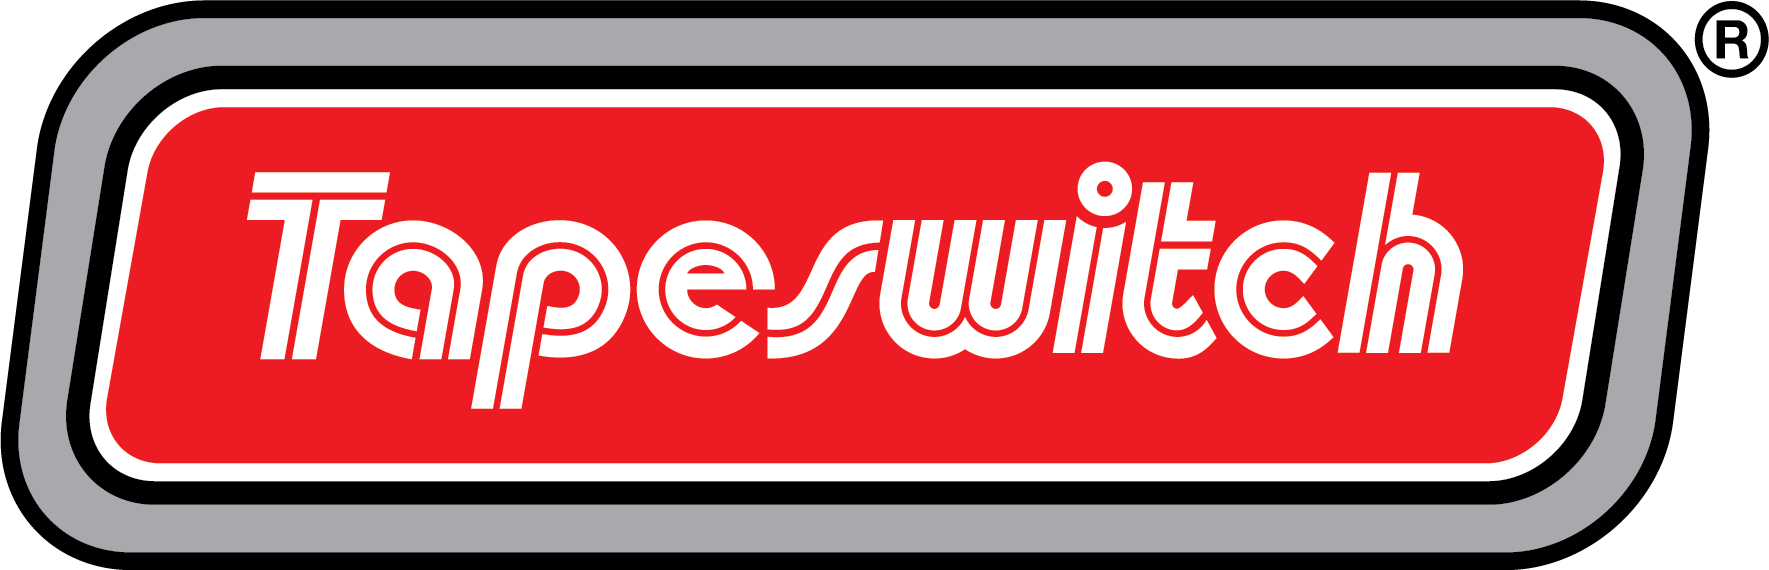 Logo Tapeswitch